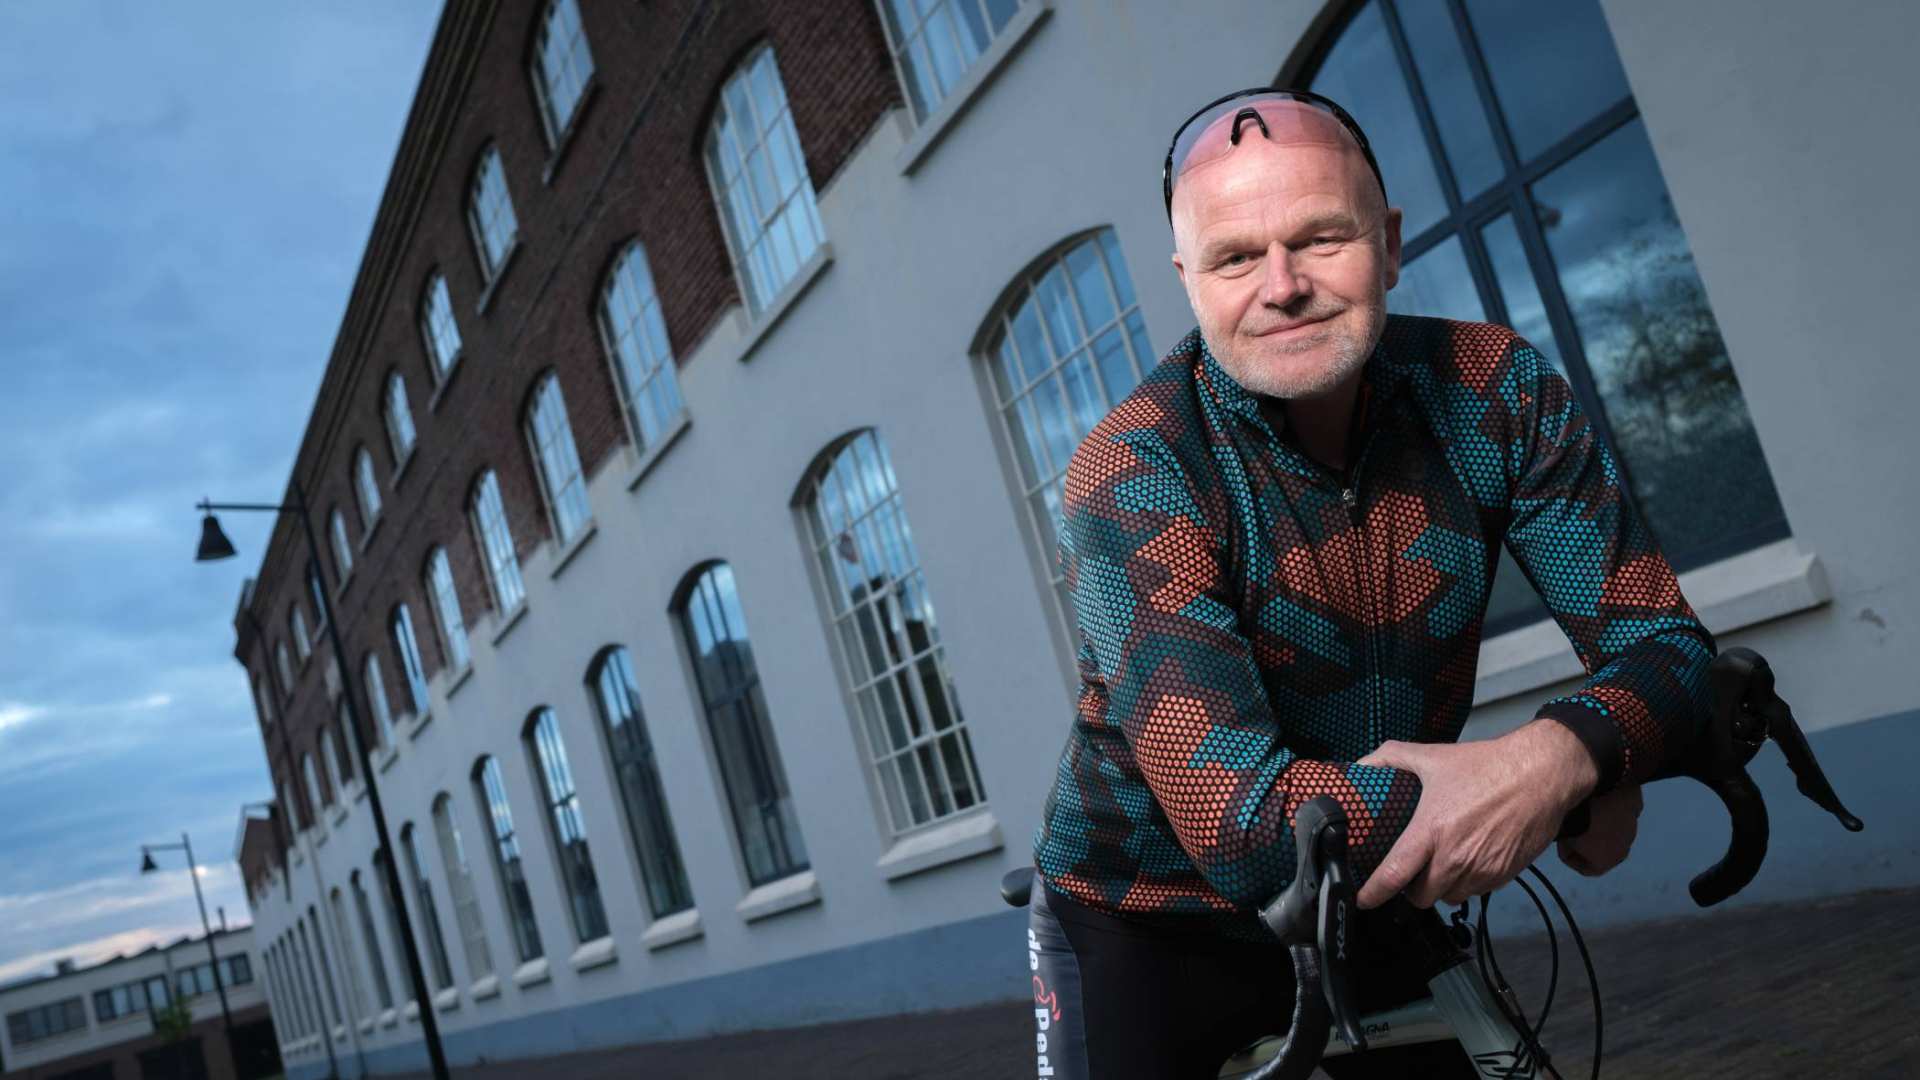 Marcel Rekers met fiets. Eénmalig te gebruiken ivm nieuwsbericht han.nl